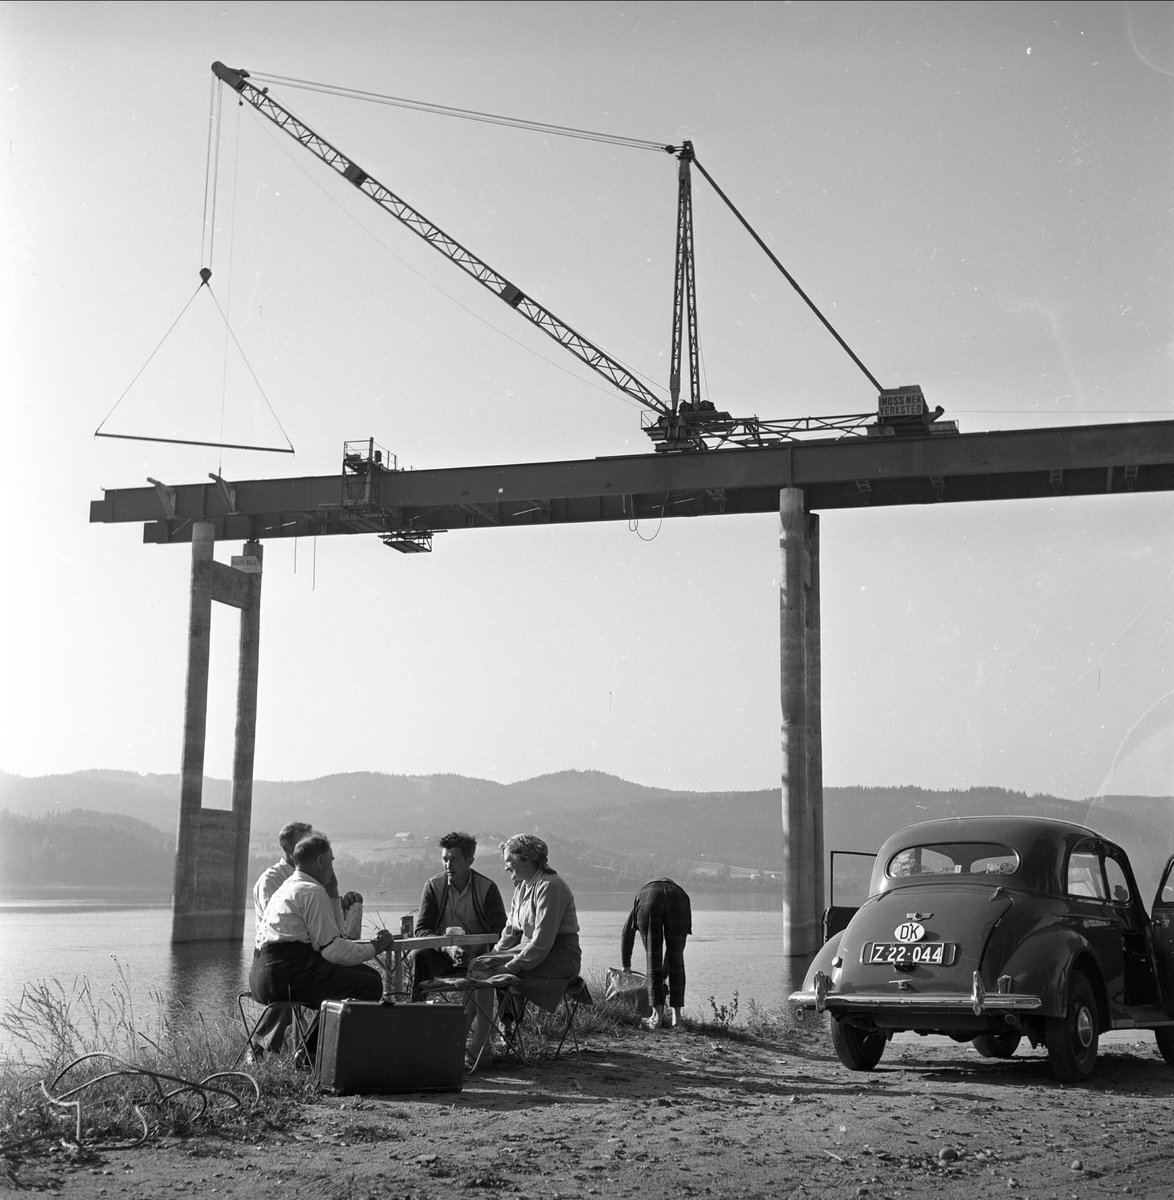 Minnesund, Akershus, september 1958. Minnesundbrua. Bil, mennesker og brubygging. Nordsida.